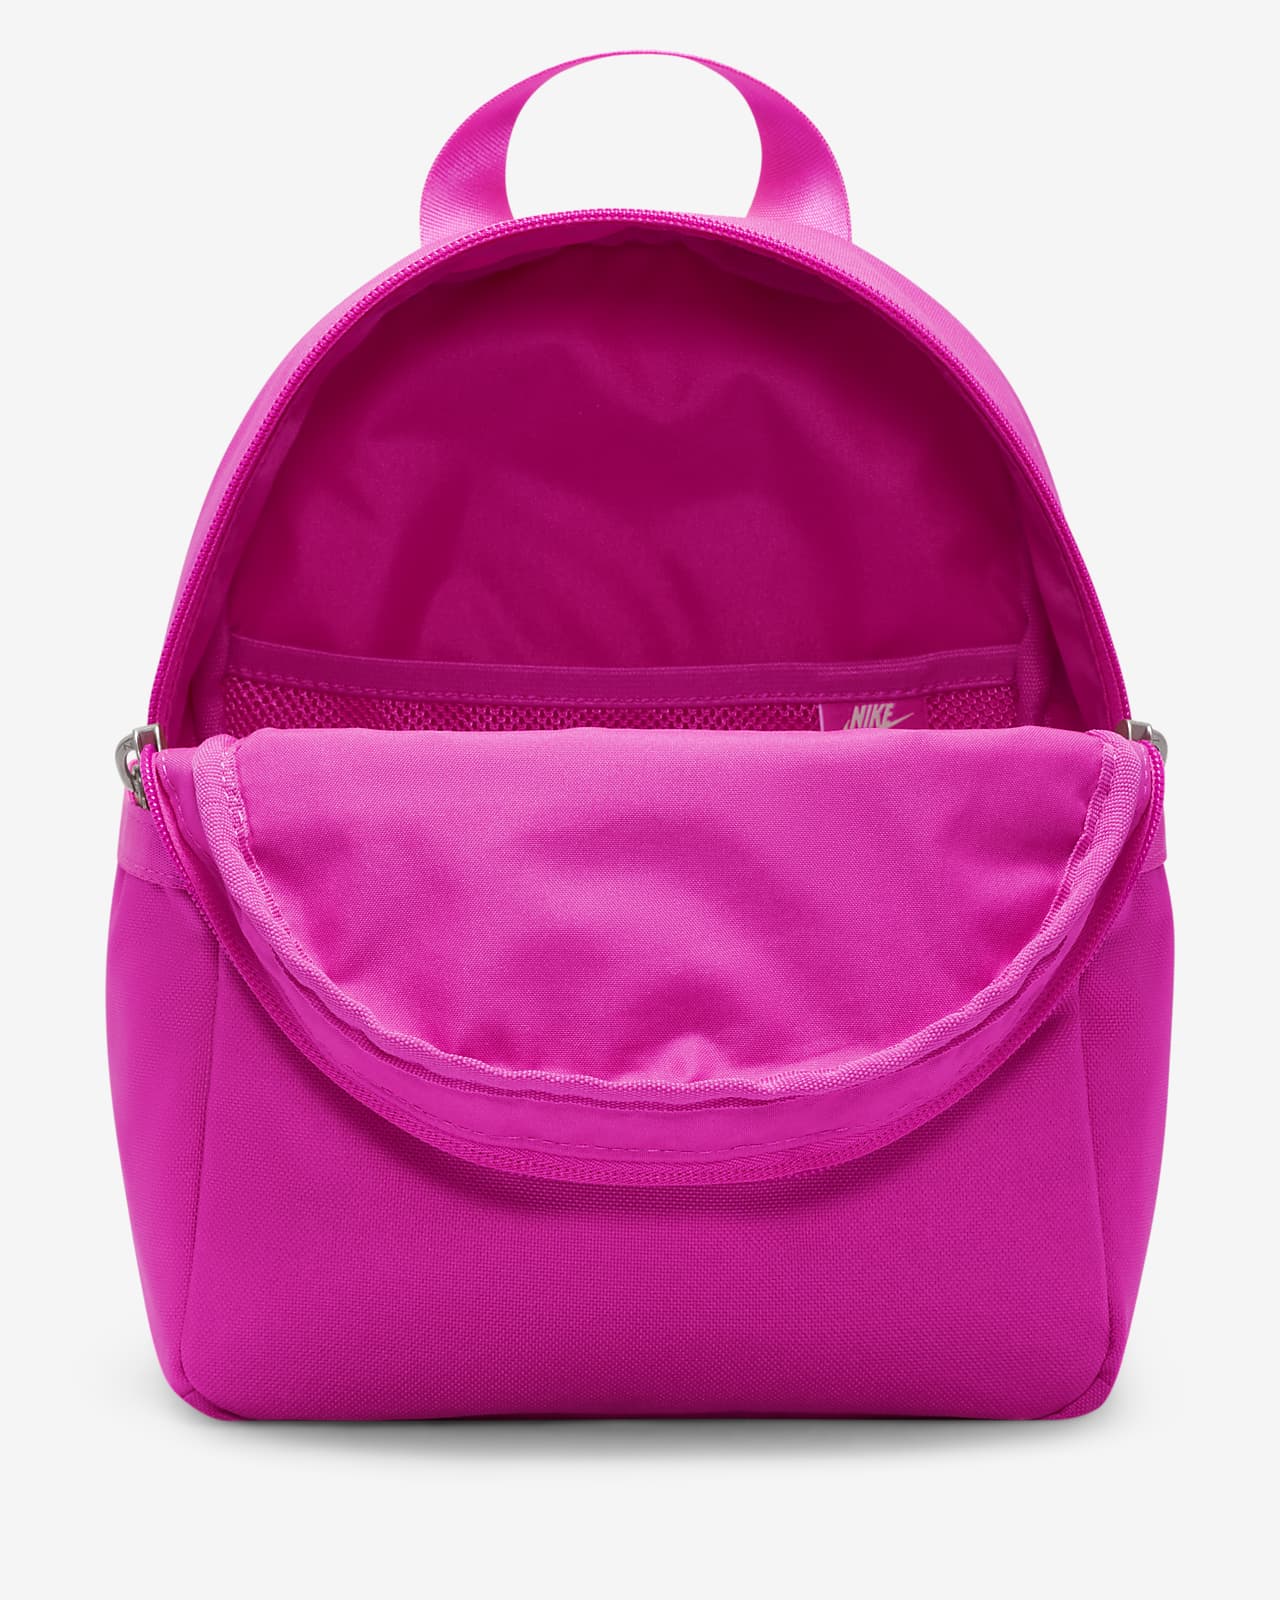 Nike Futura Luxe Women's Mini Backpack, Women's Fashion, Bags